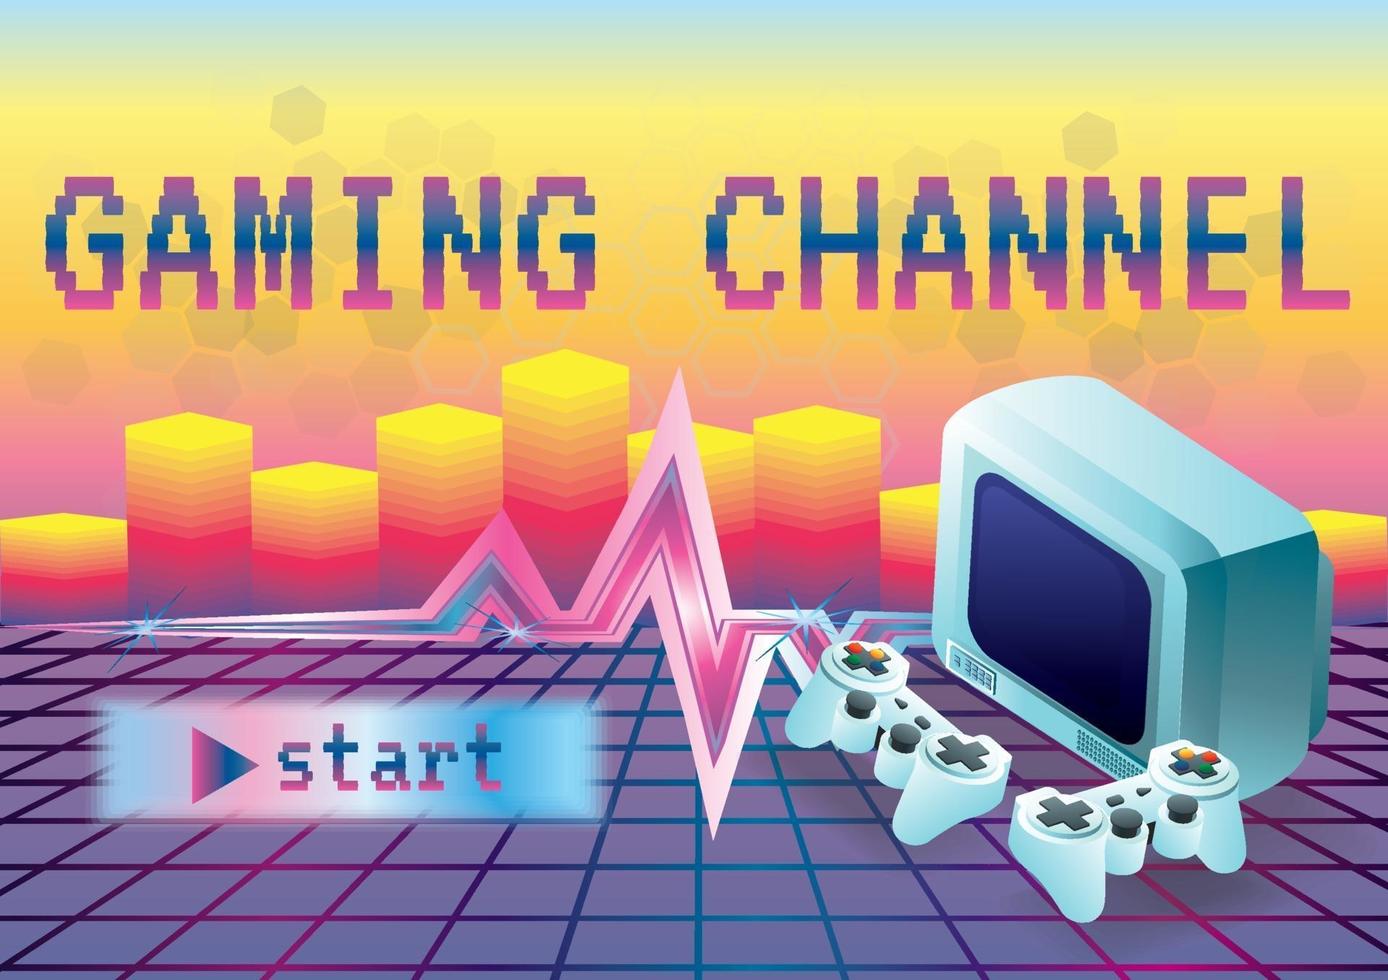 game computer kanaal retro achtergrond vector